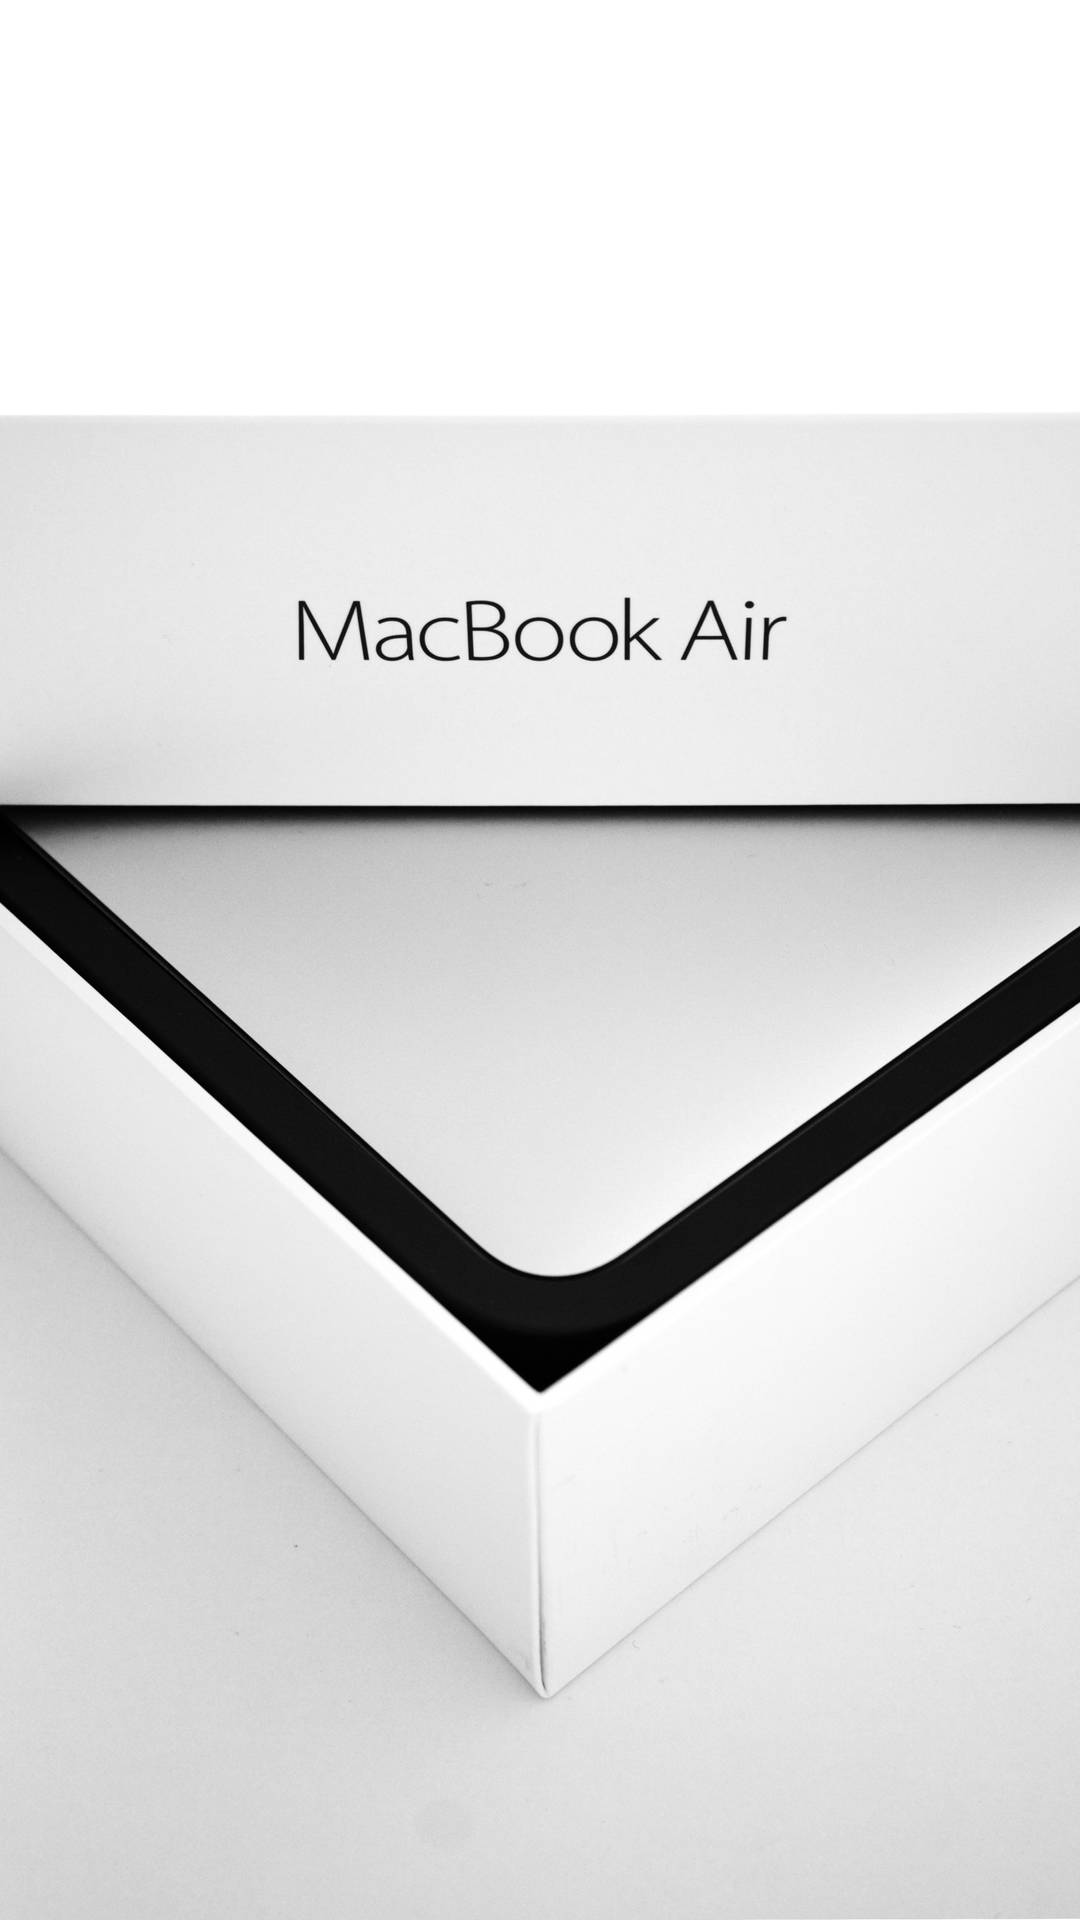 Eineschachtel Eines Macbook Air 2020 Wallpaper